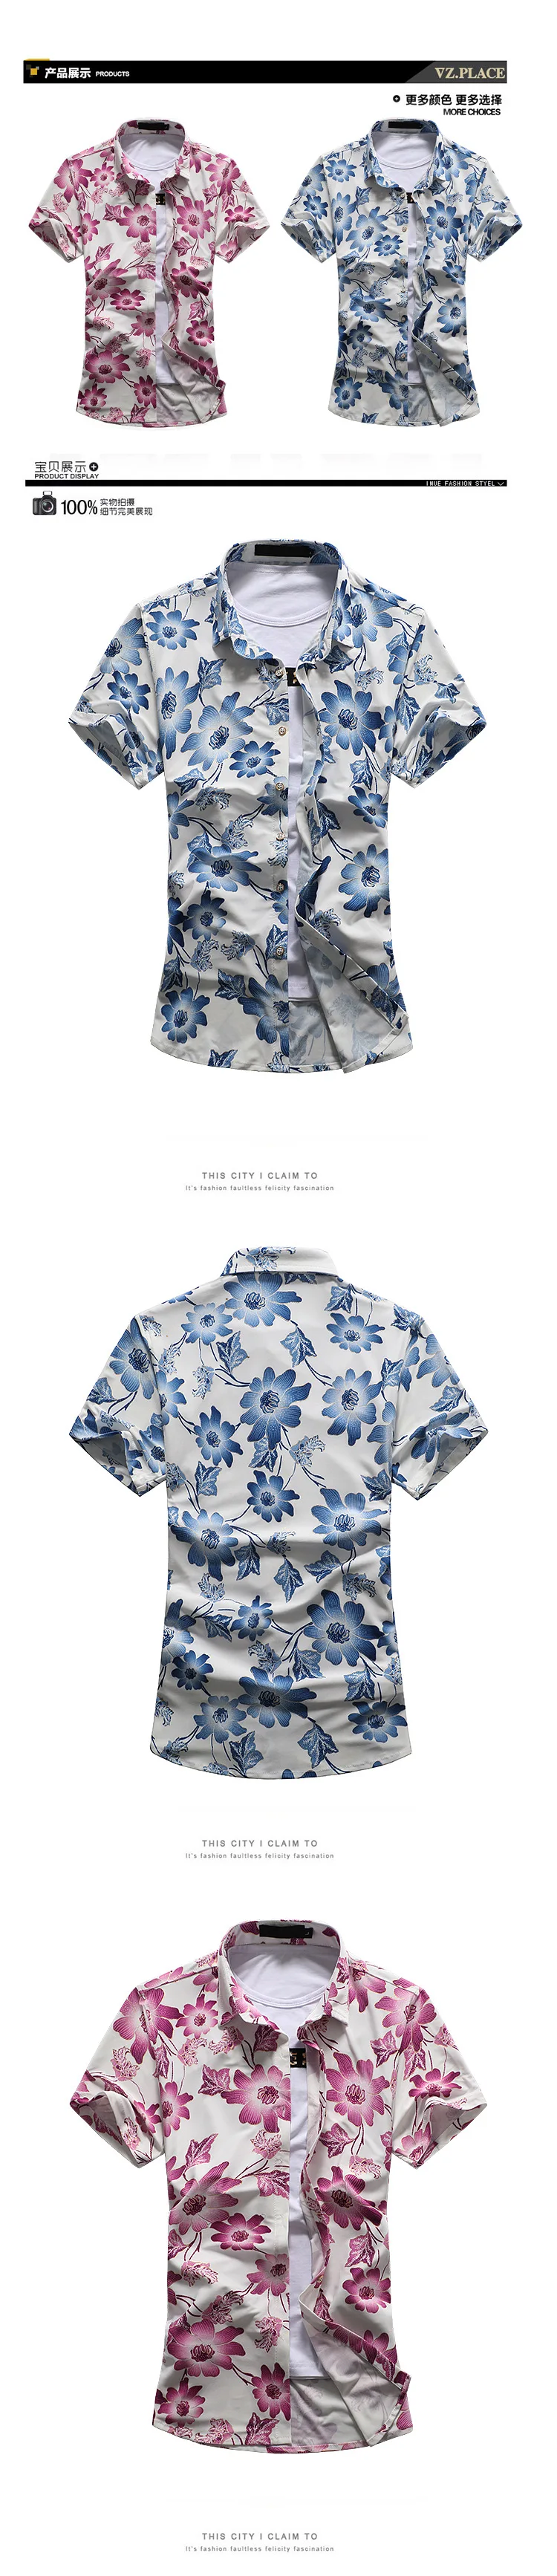 Печатные Для мужчин; короткий рукав гавайская рубашка 2018 Новое поступление; Летнее модные цветочные Повседневное Slim Fit плюс Размеры M-6XL 7XL